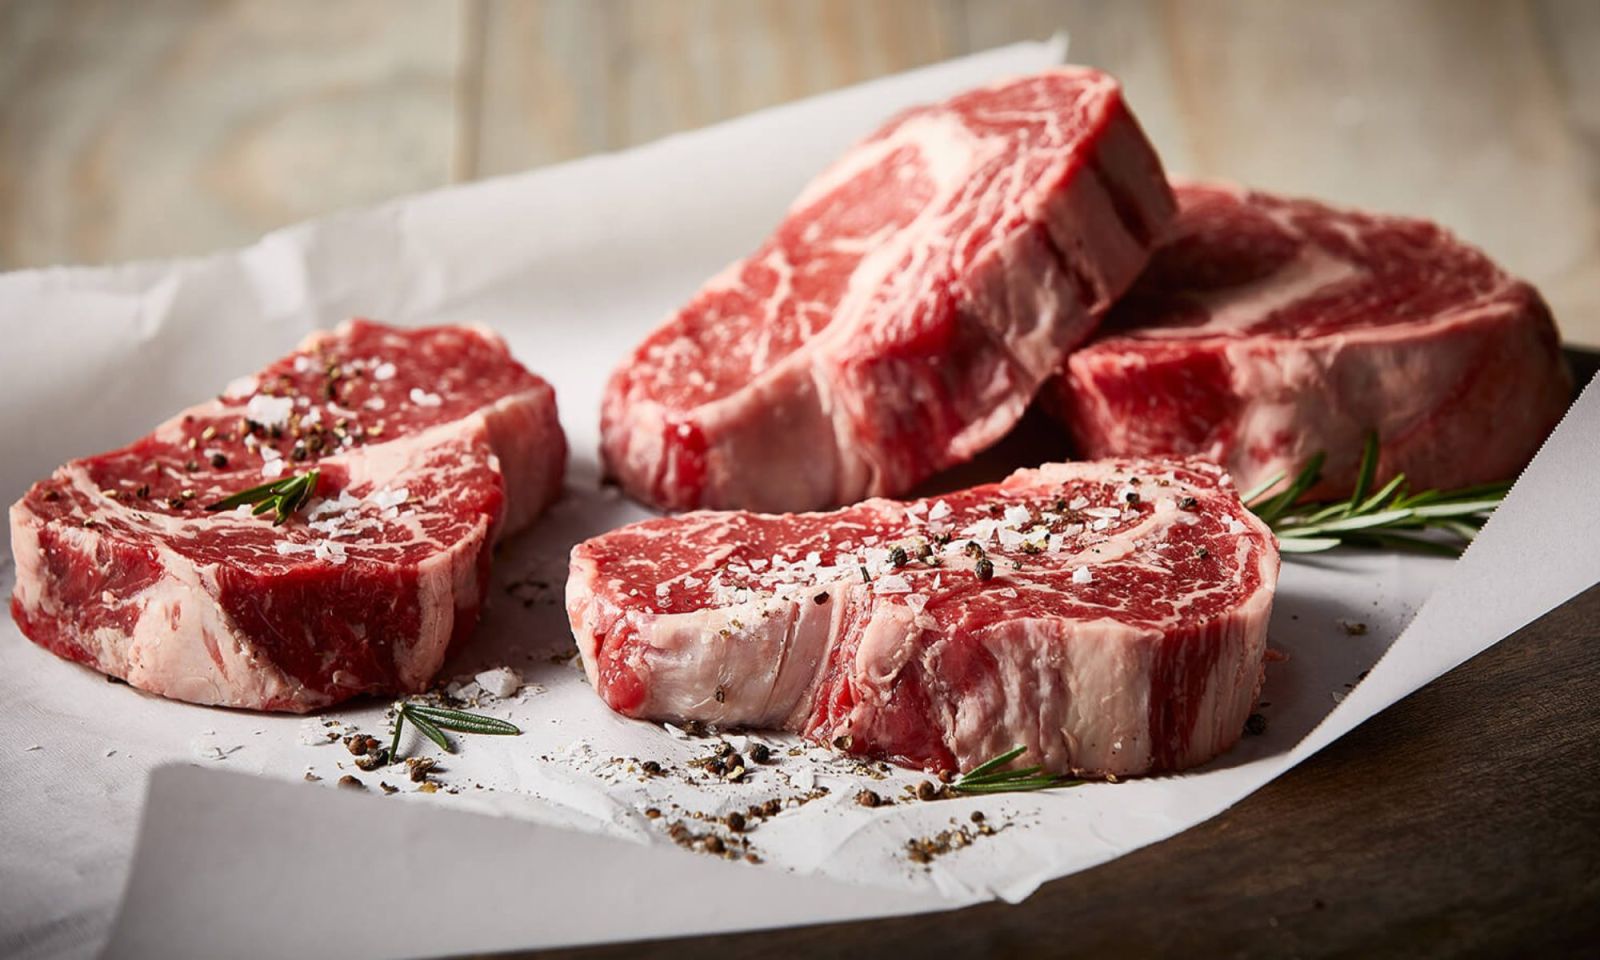 Theo các chuyên gia, trong 100g thịt bò có hàm lượng calo khoảng 250 kcal